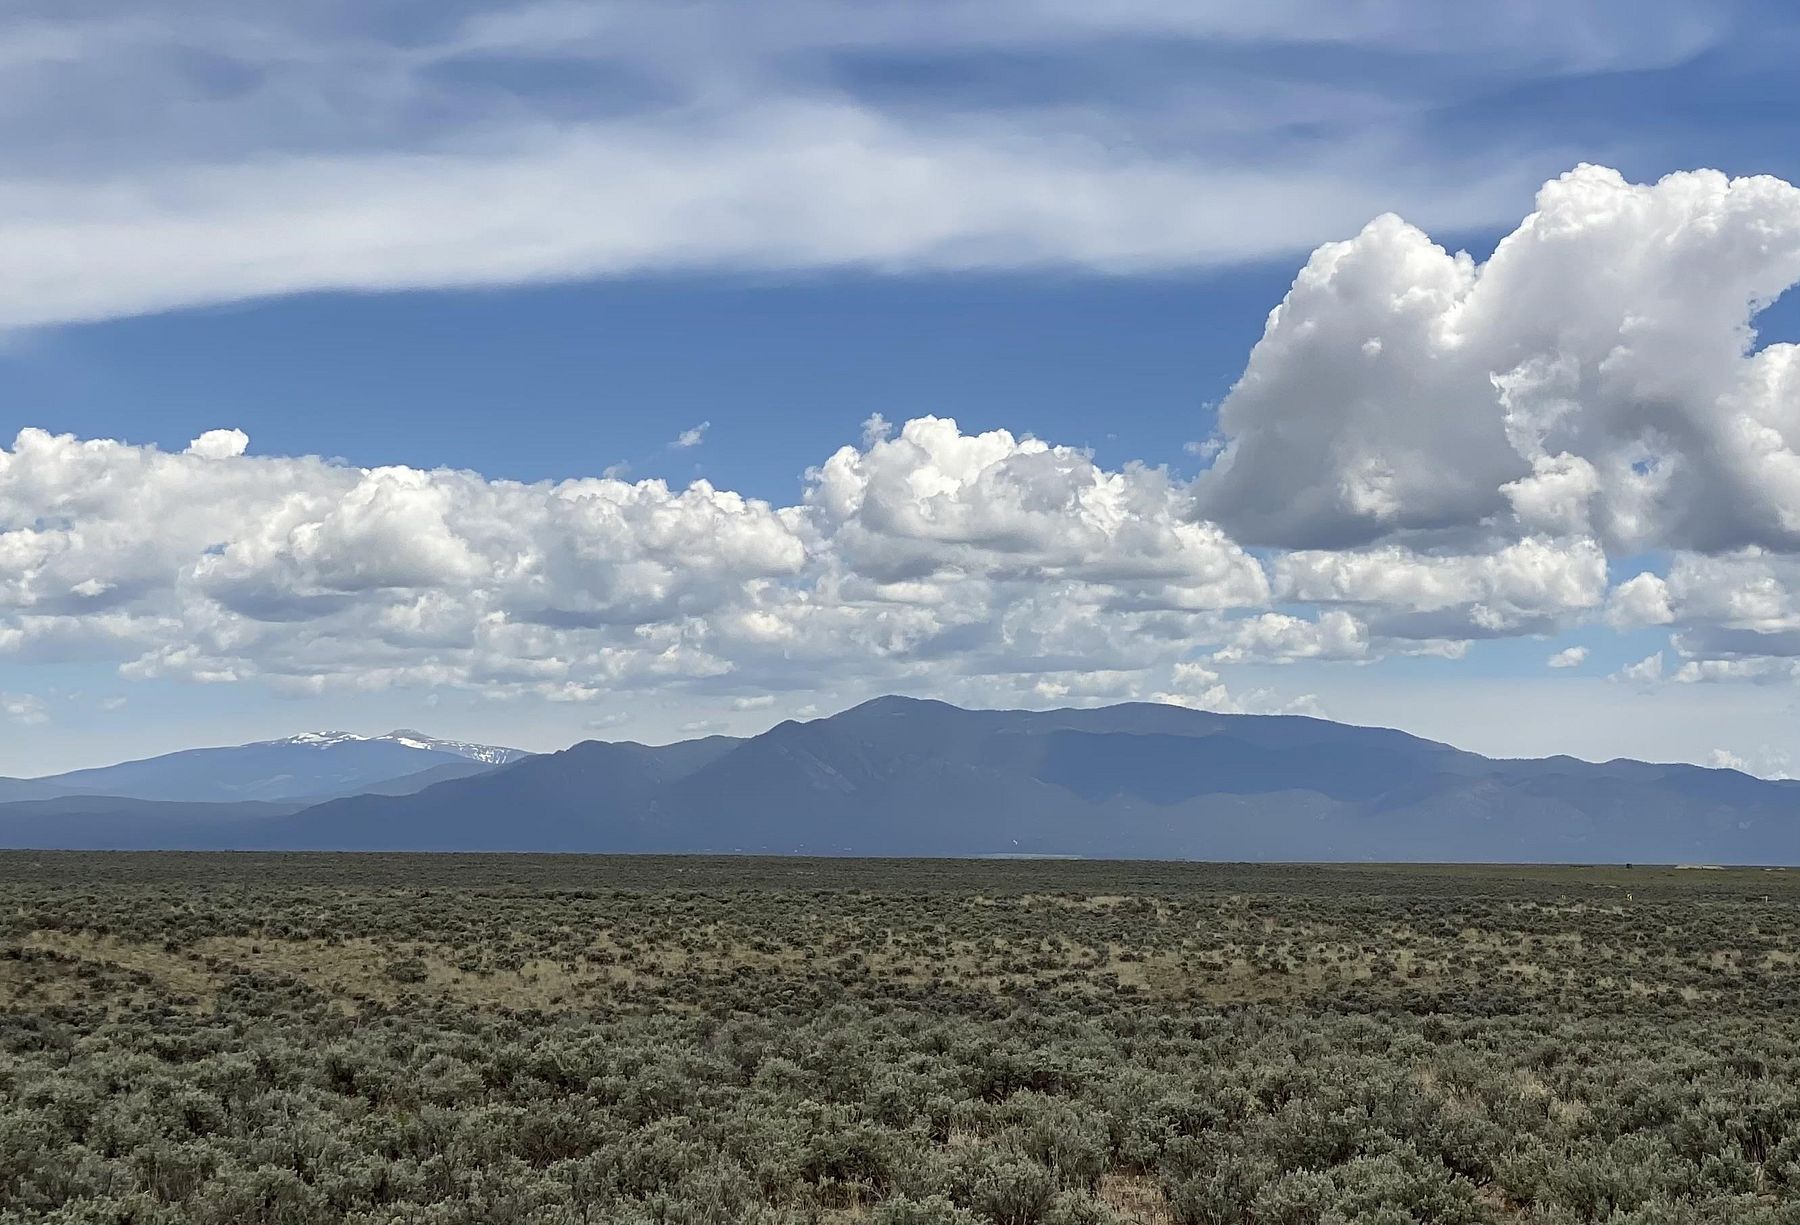 5 Acres of Land for Sale in El Prado, New Mexico